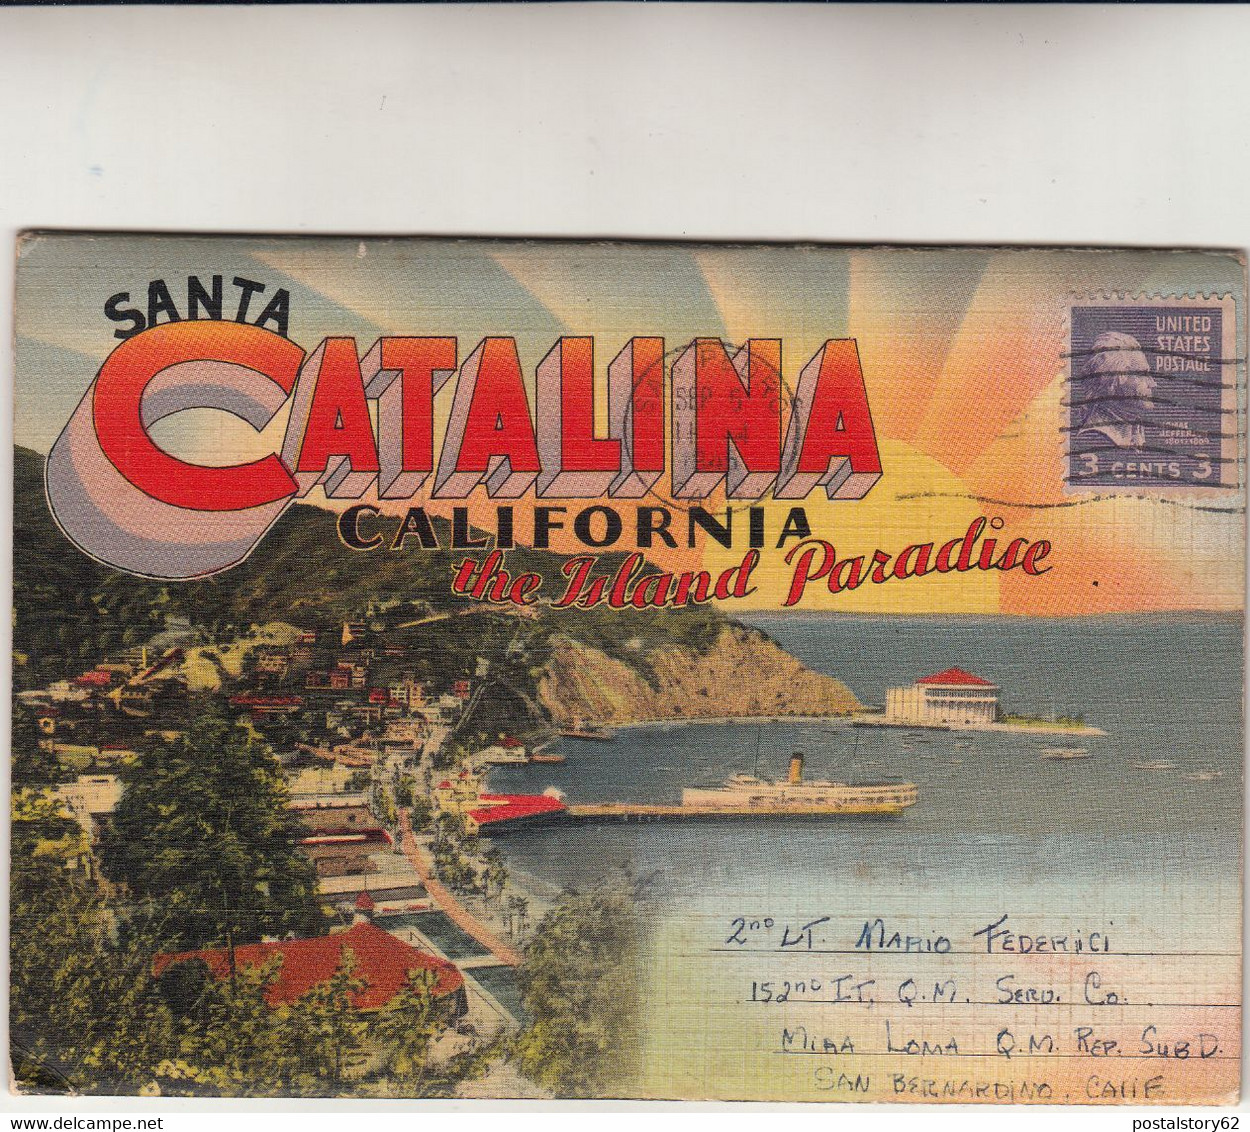 Santa Catalina - California - Folder Viaggiato Con 12 Immagini The Island Paradise. - Cartoline Ricordo